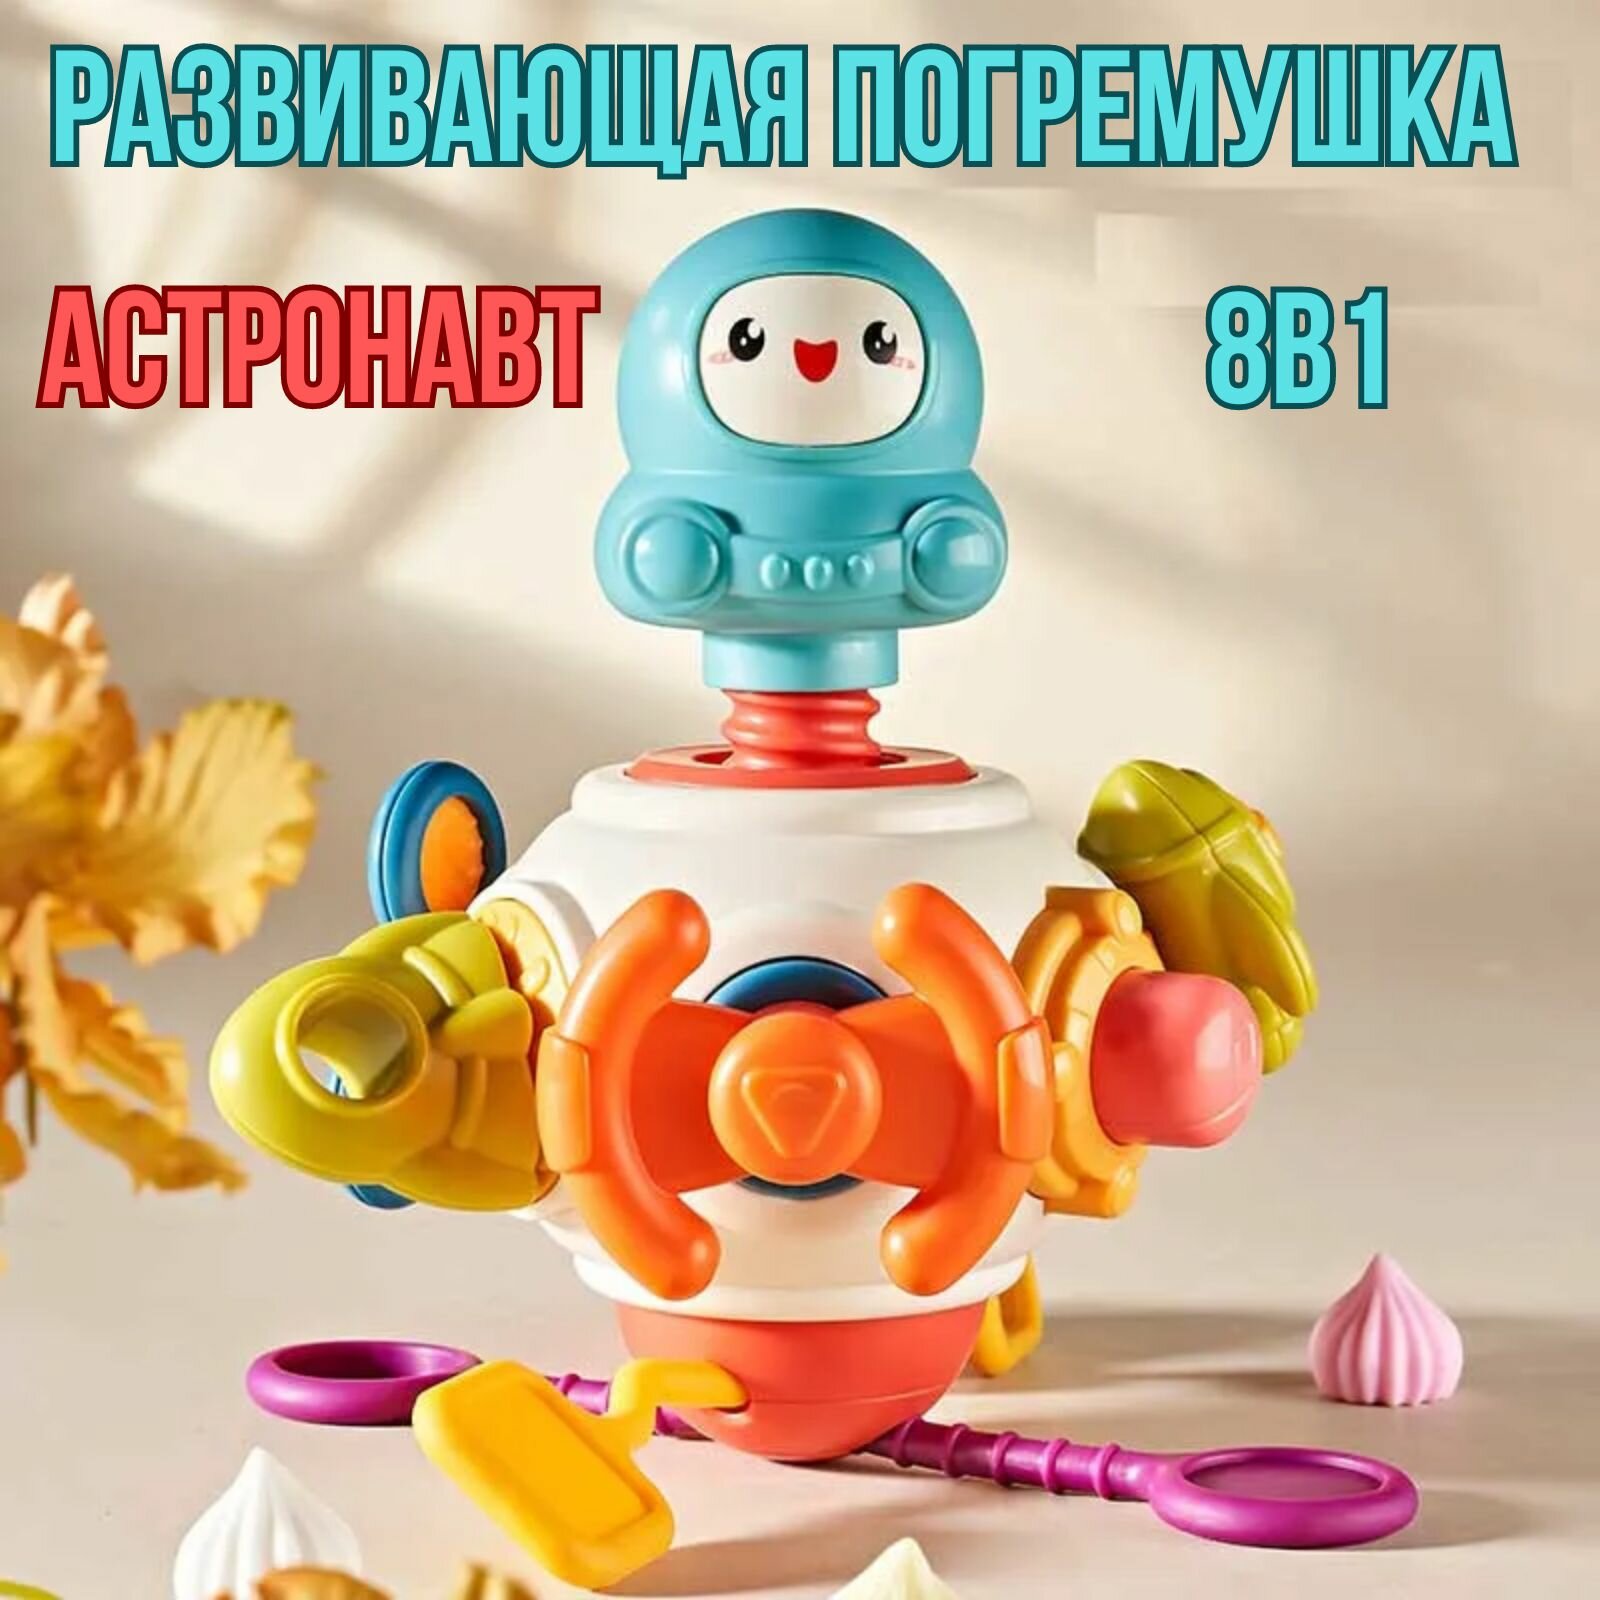 Развивающая игрушка для малышей Бизиборд "Астронавт" развивашка 8 в 1